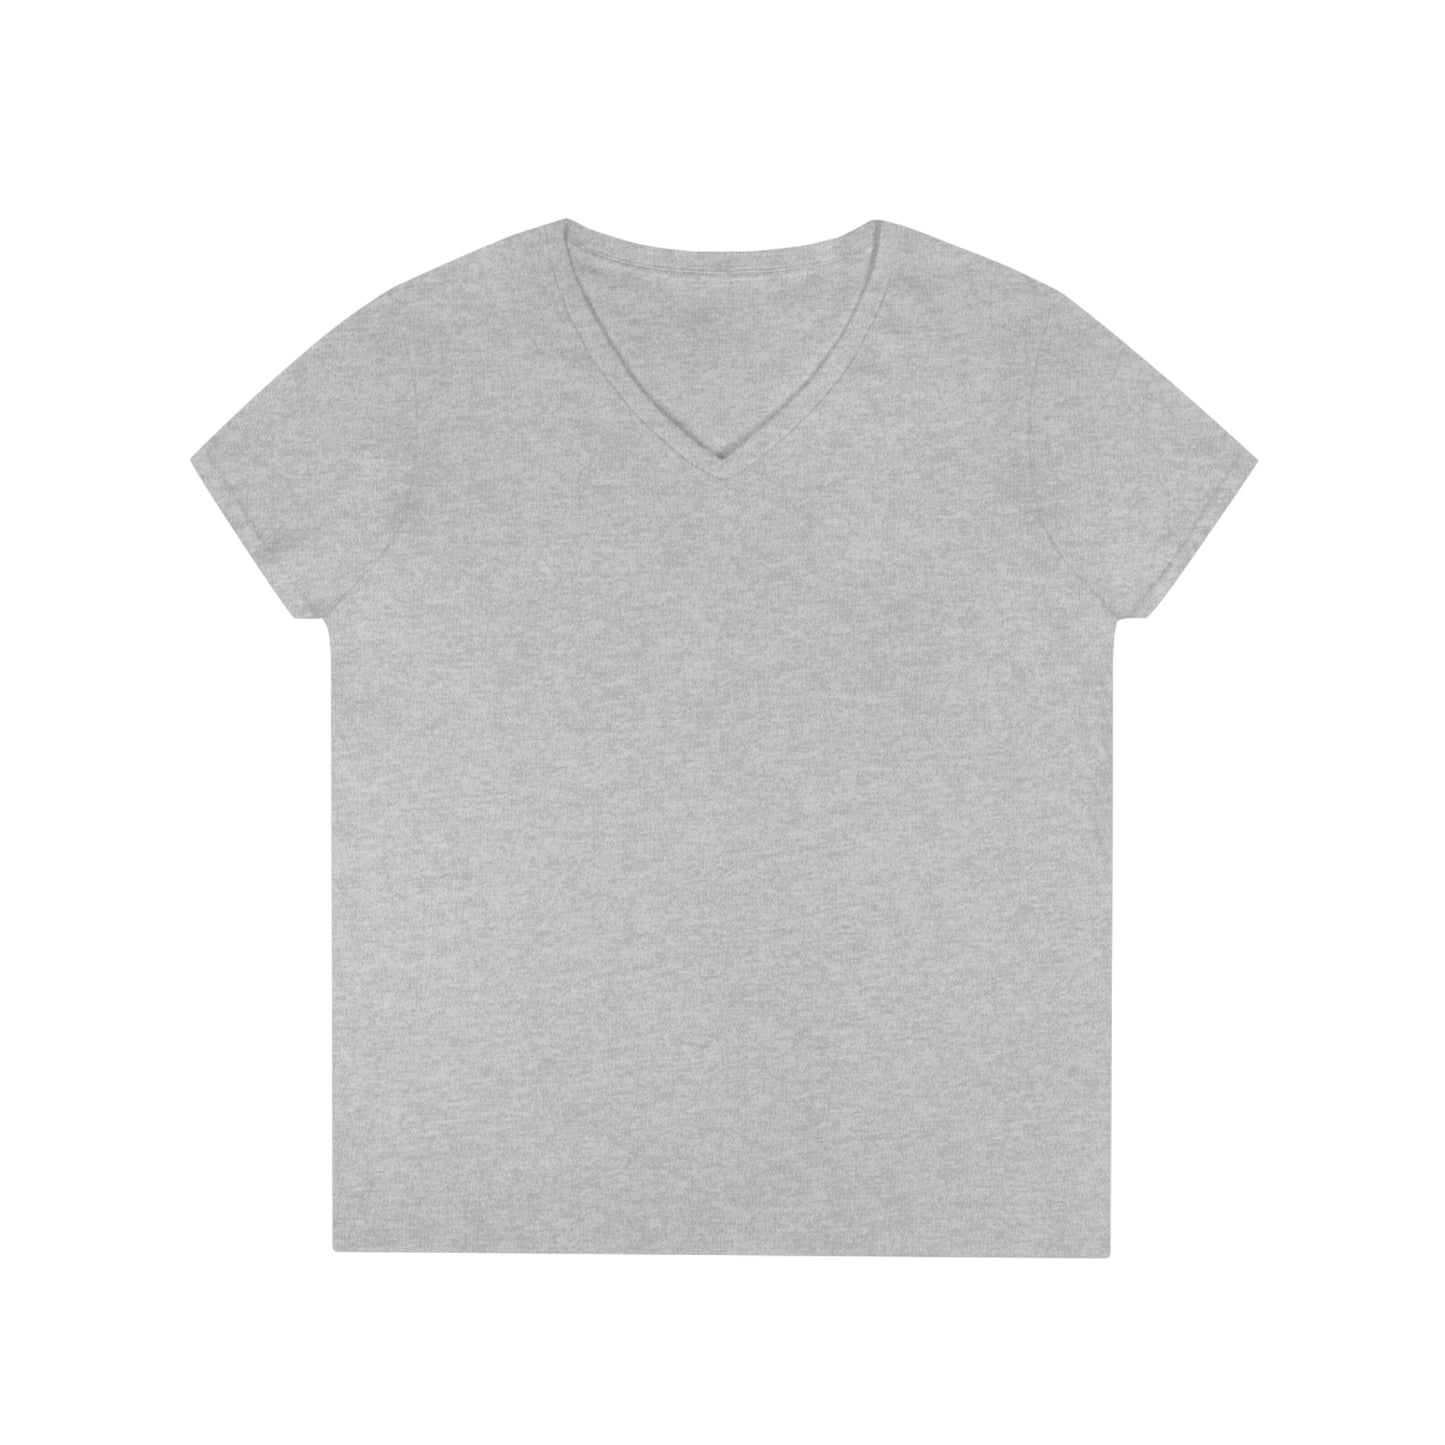 Dreaming Together - Ladies' V-Neck T-Shirt